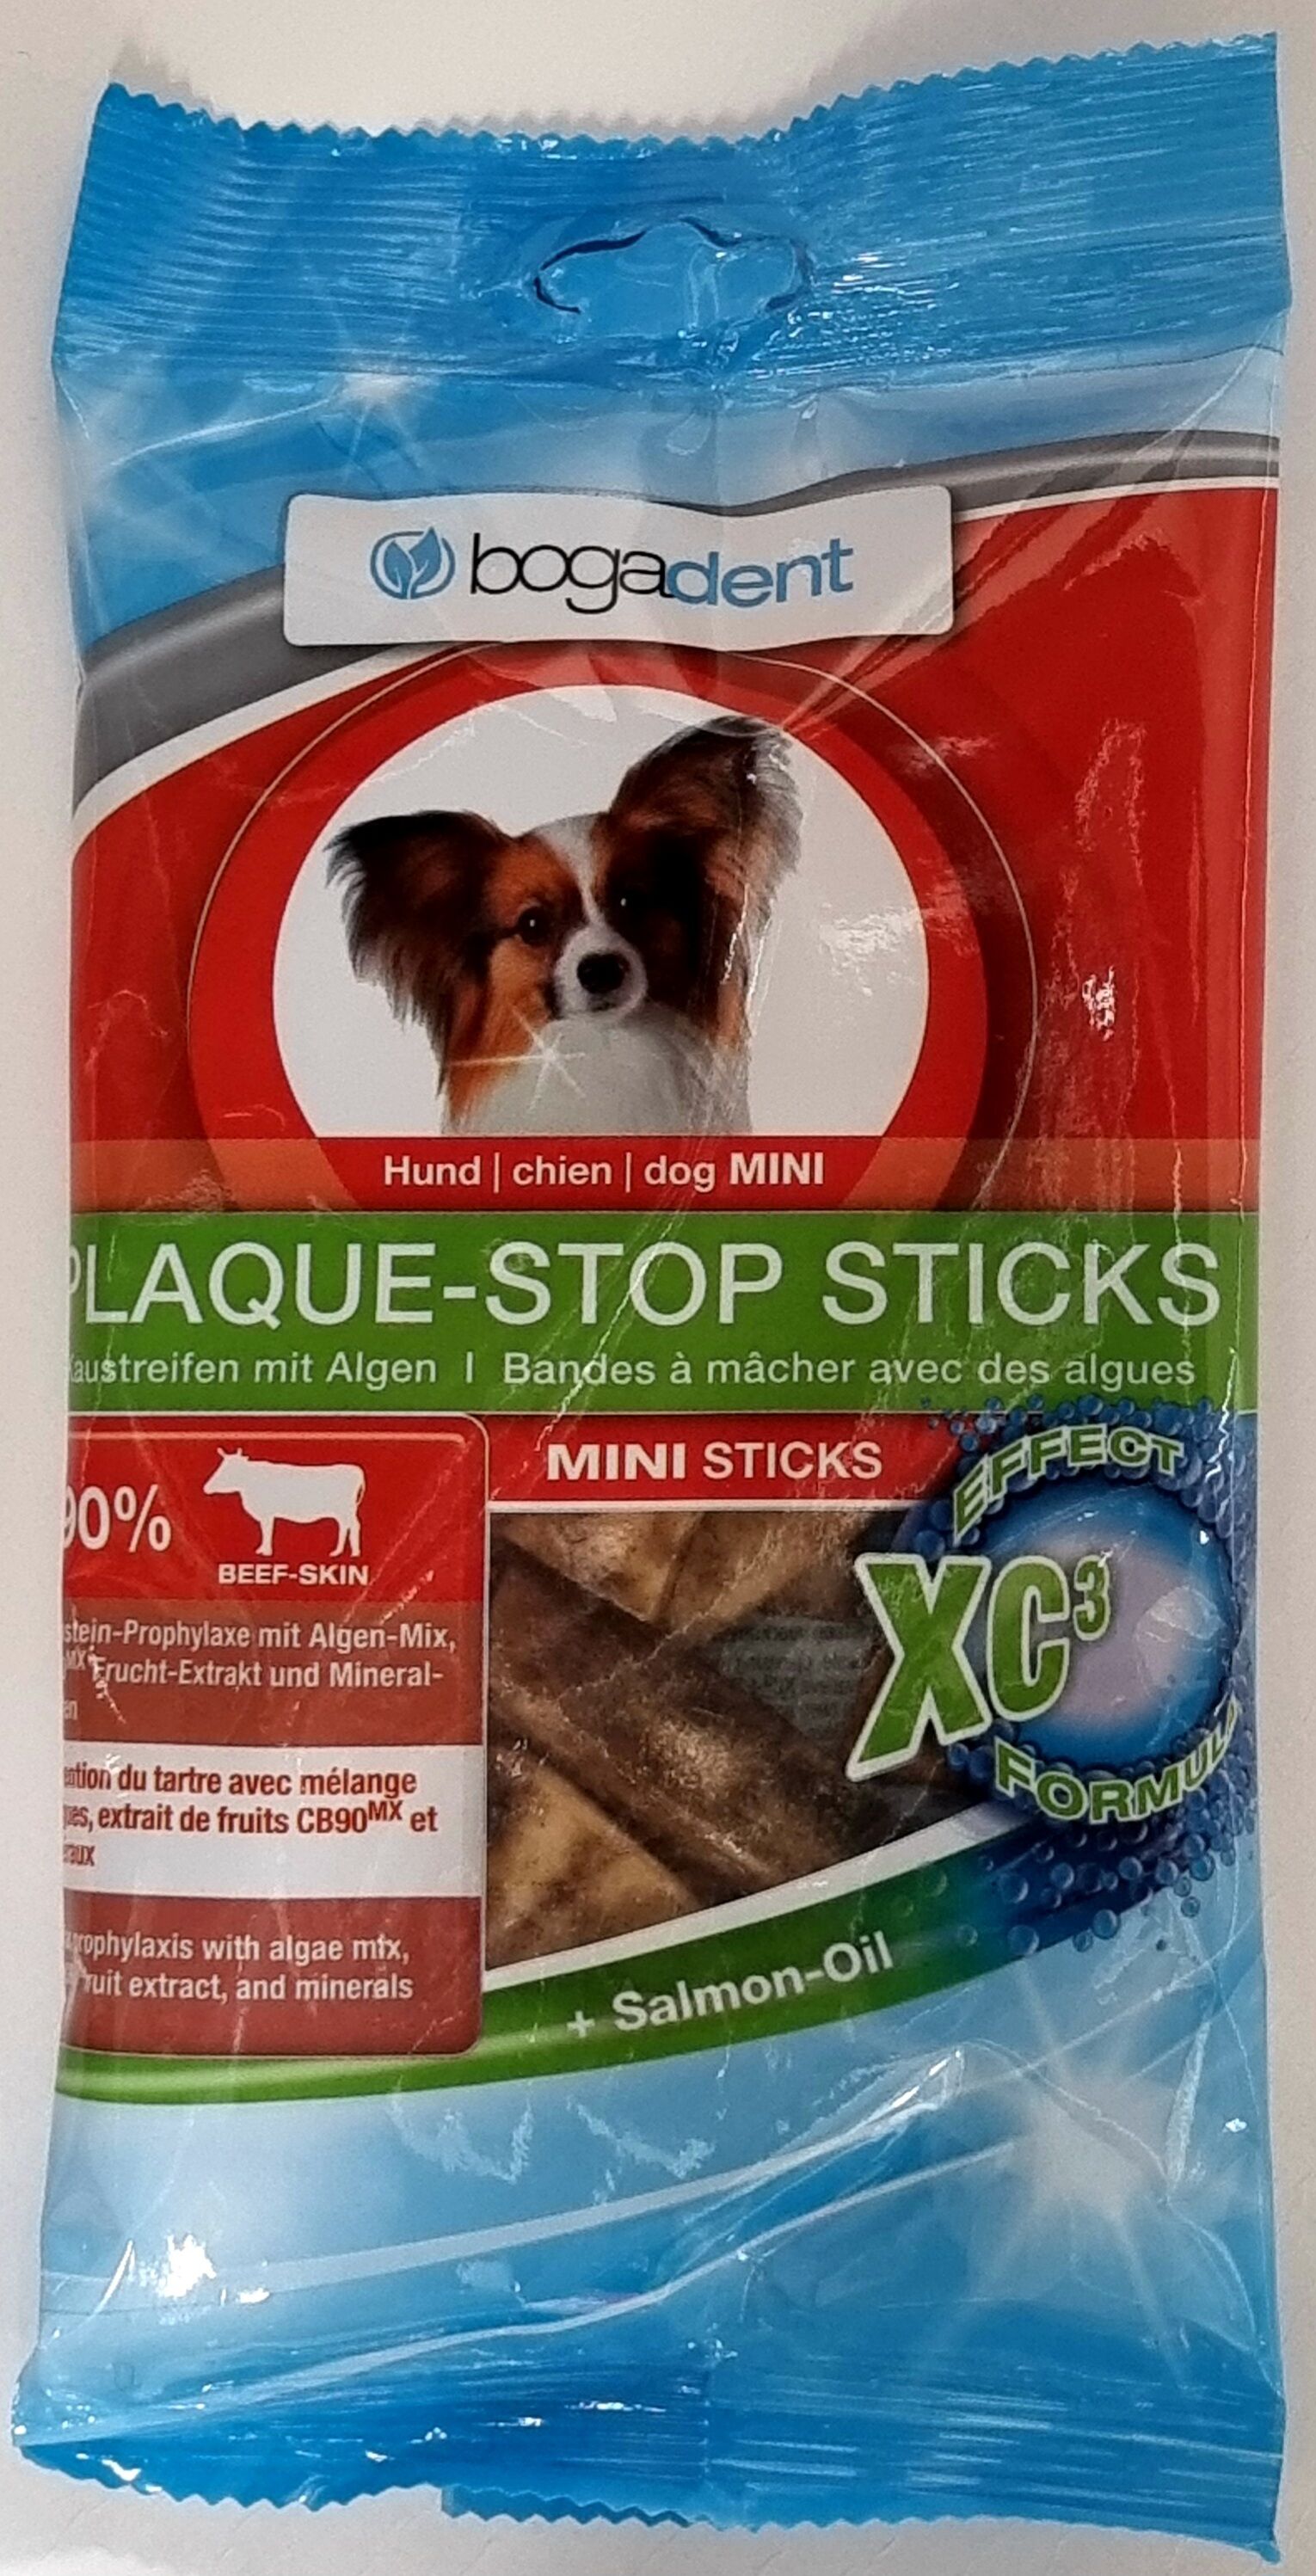 bogadent-Plaque-Stop-Sticks-Mini-Hund-Zahnpflege-BG-83241